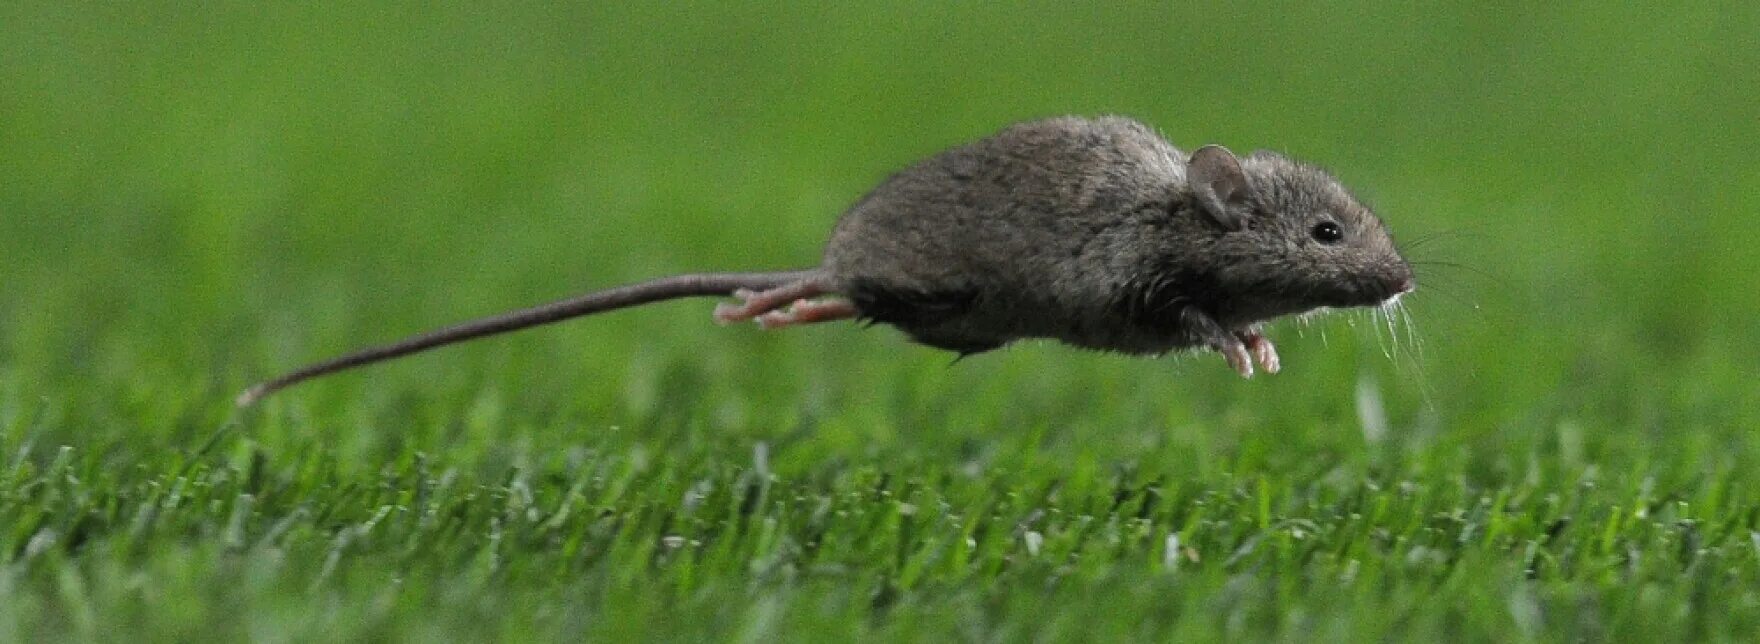 Мышь бежит. Крыса убегает. Мышь прыгает. Крыса бегает. Видео где бегает мышка